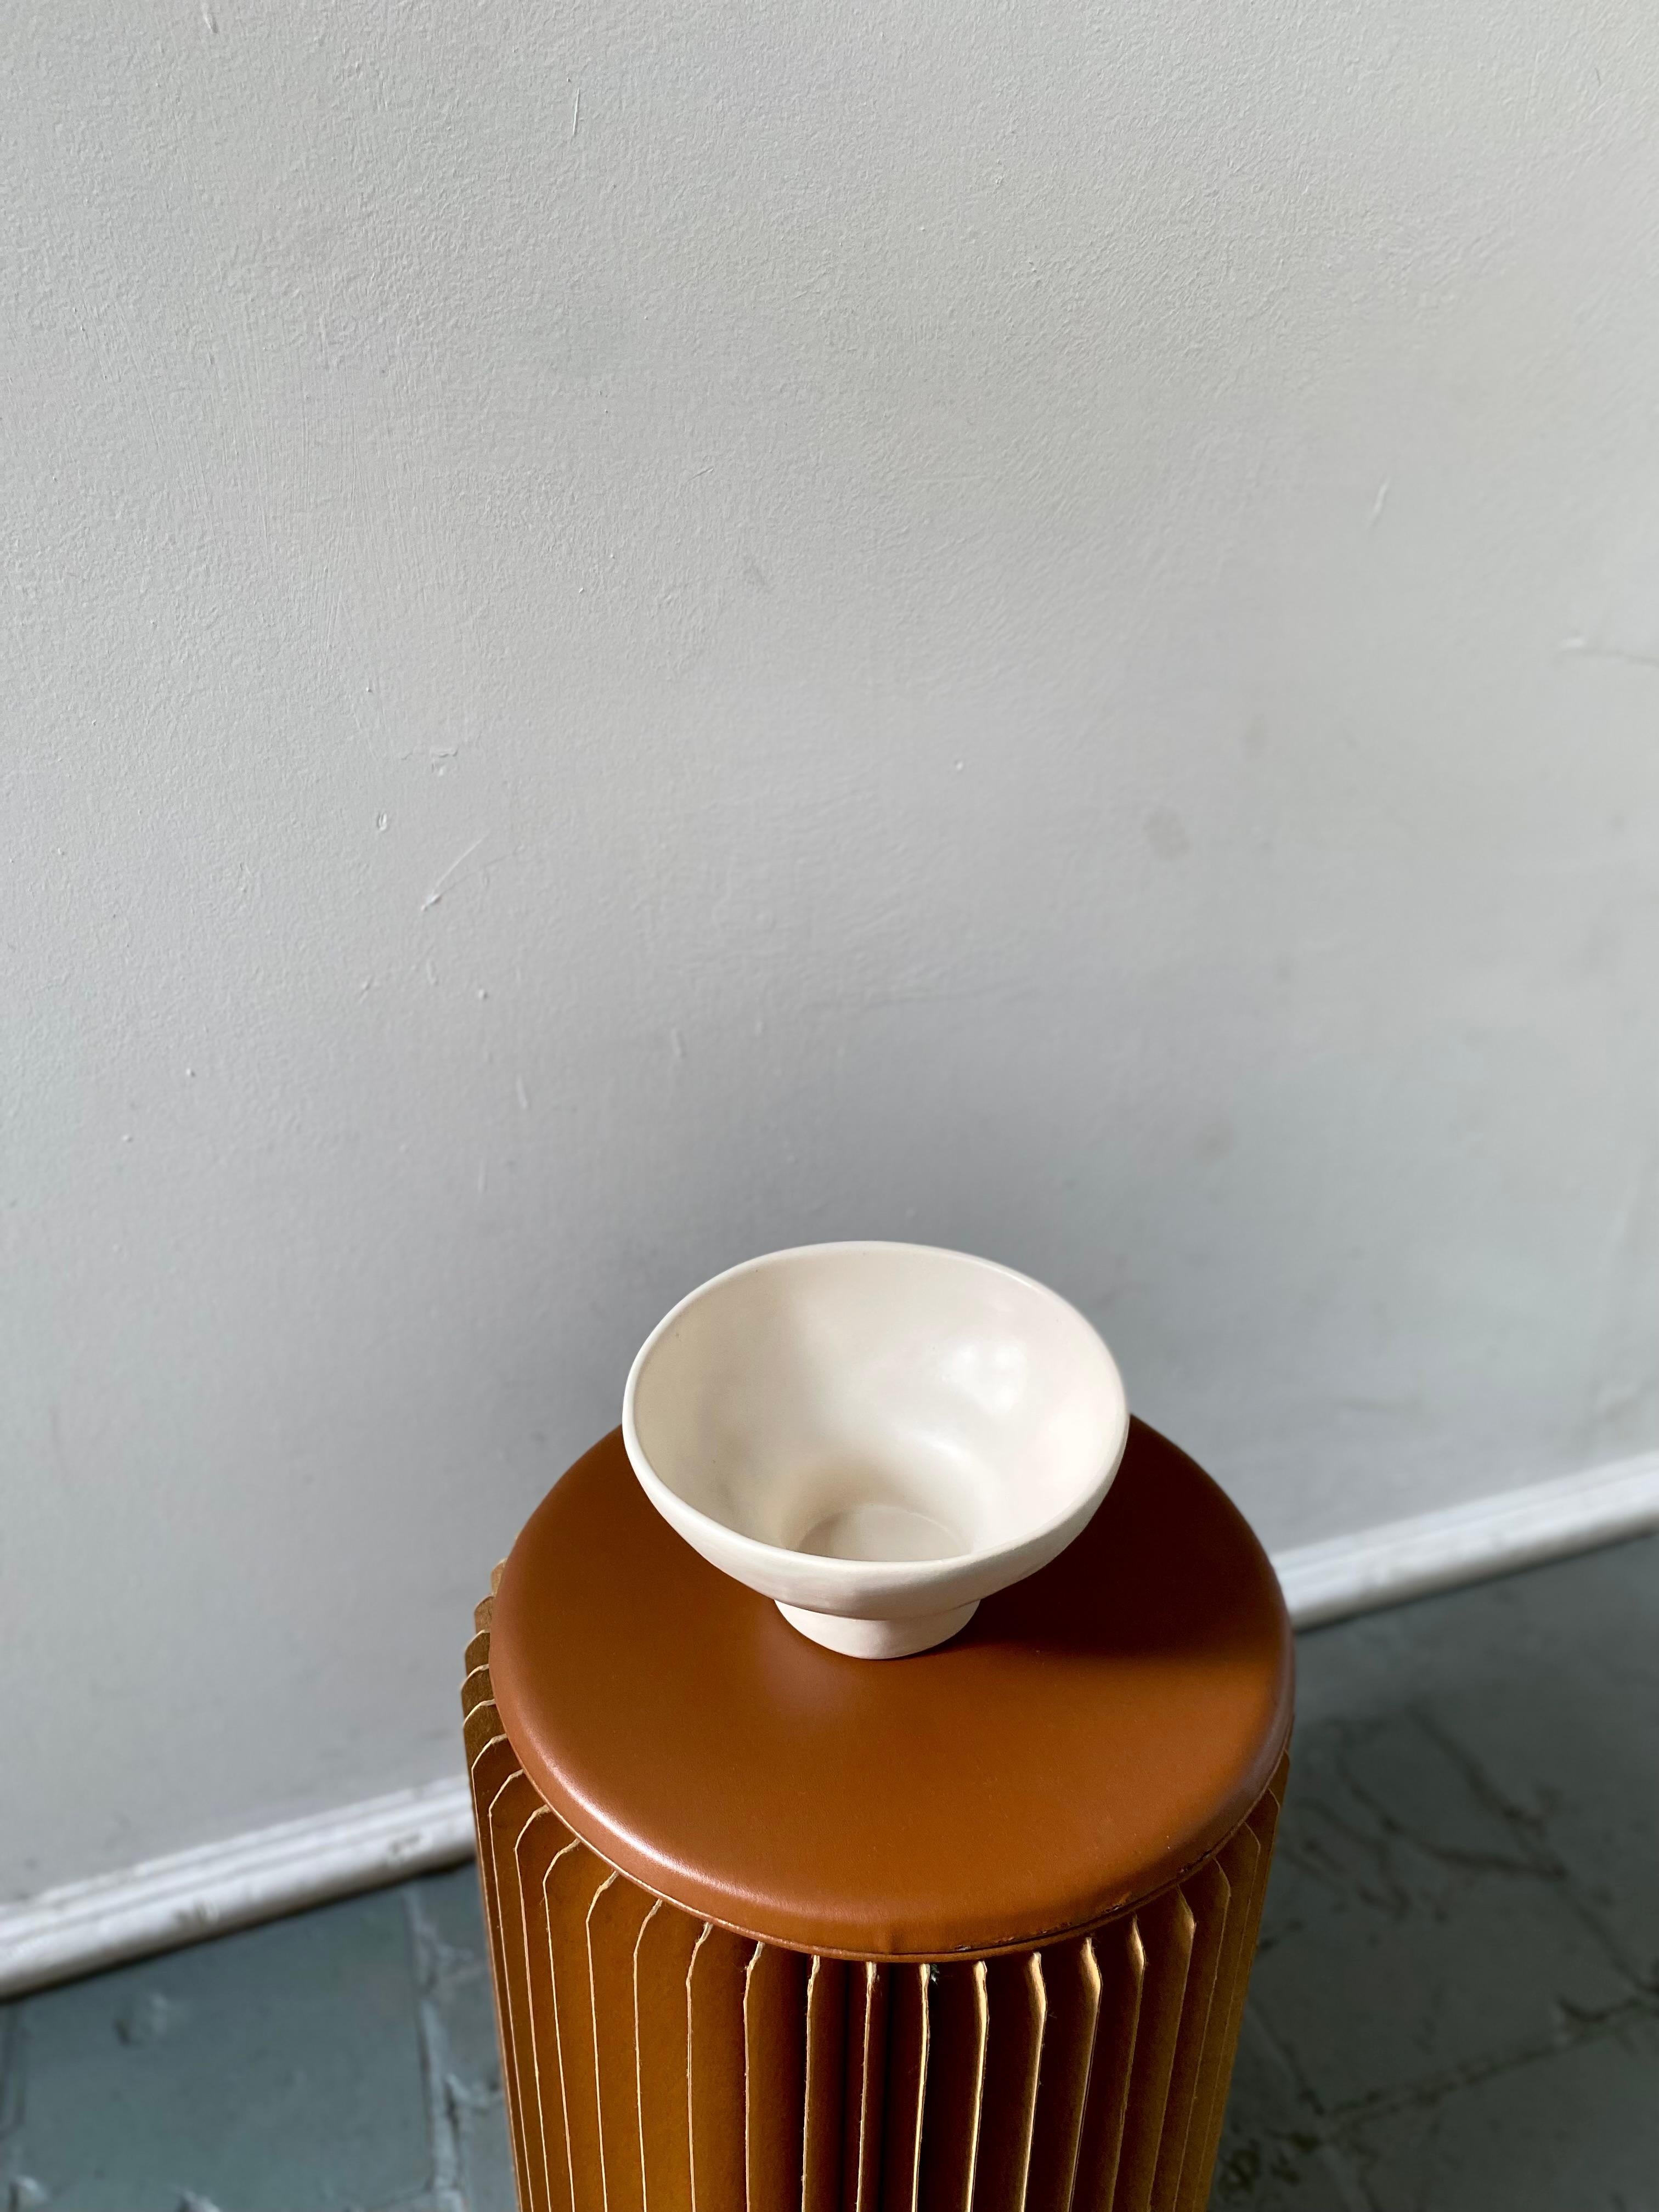 Unsere handgefertigte Keramikschüssel mit organischer Form und neutralem, mattem Finish. Er eignet sich perfekt zum Genießen von Ramen und zum Servieren von Obst. Dieses einzigartige und funktionelle Stück verleiht jeder Wohnungseinrichtung einen